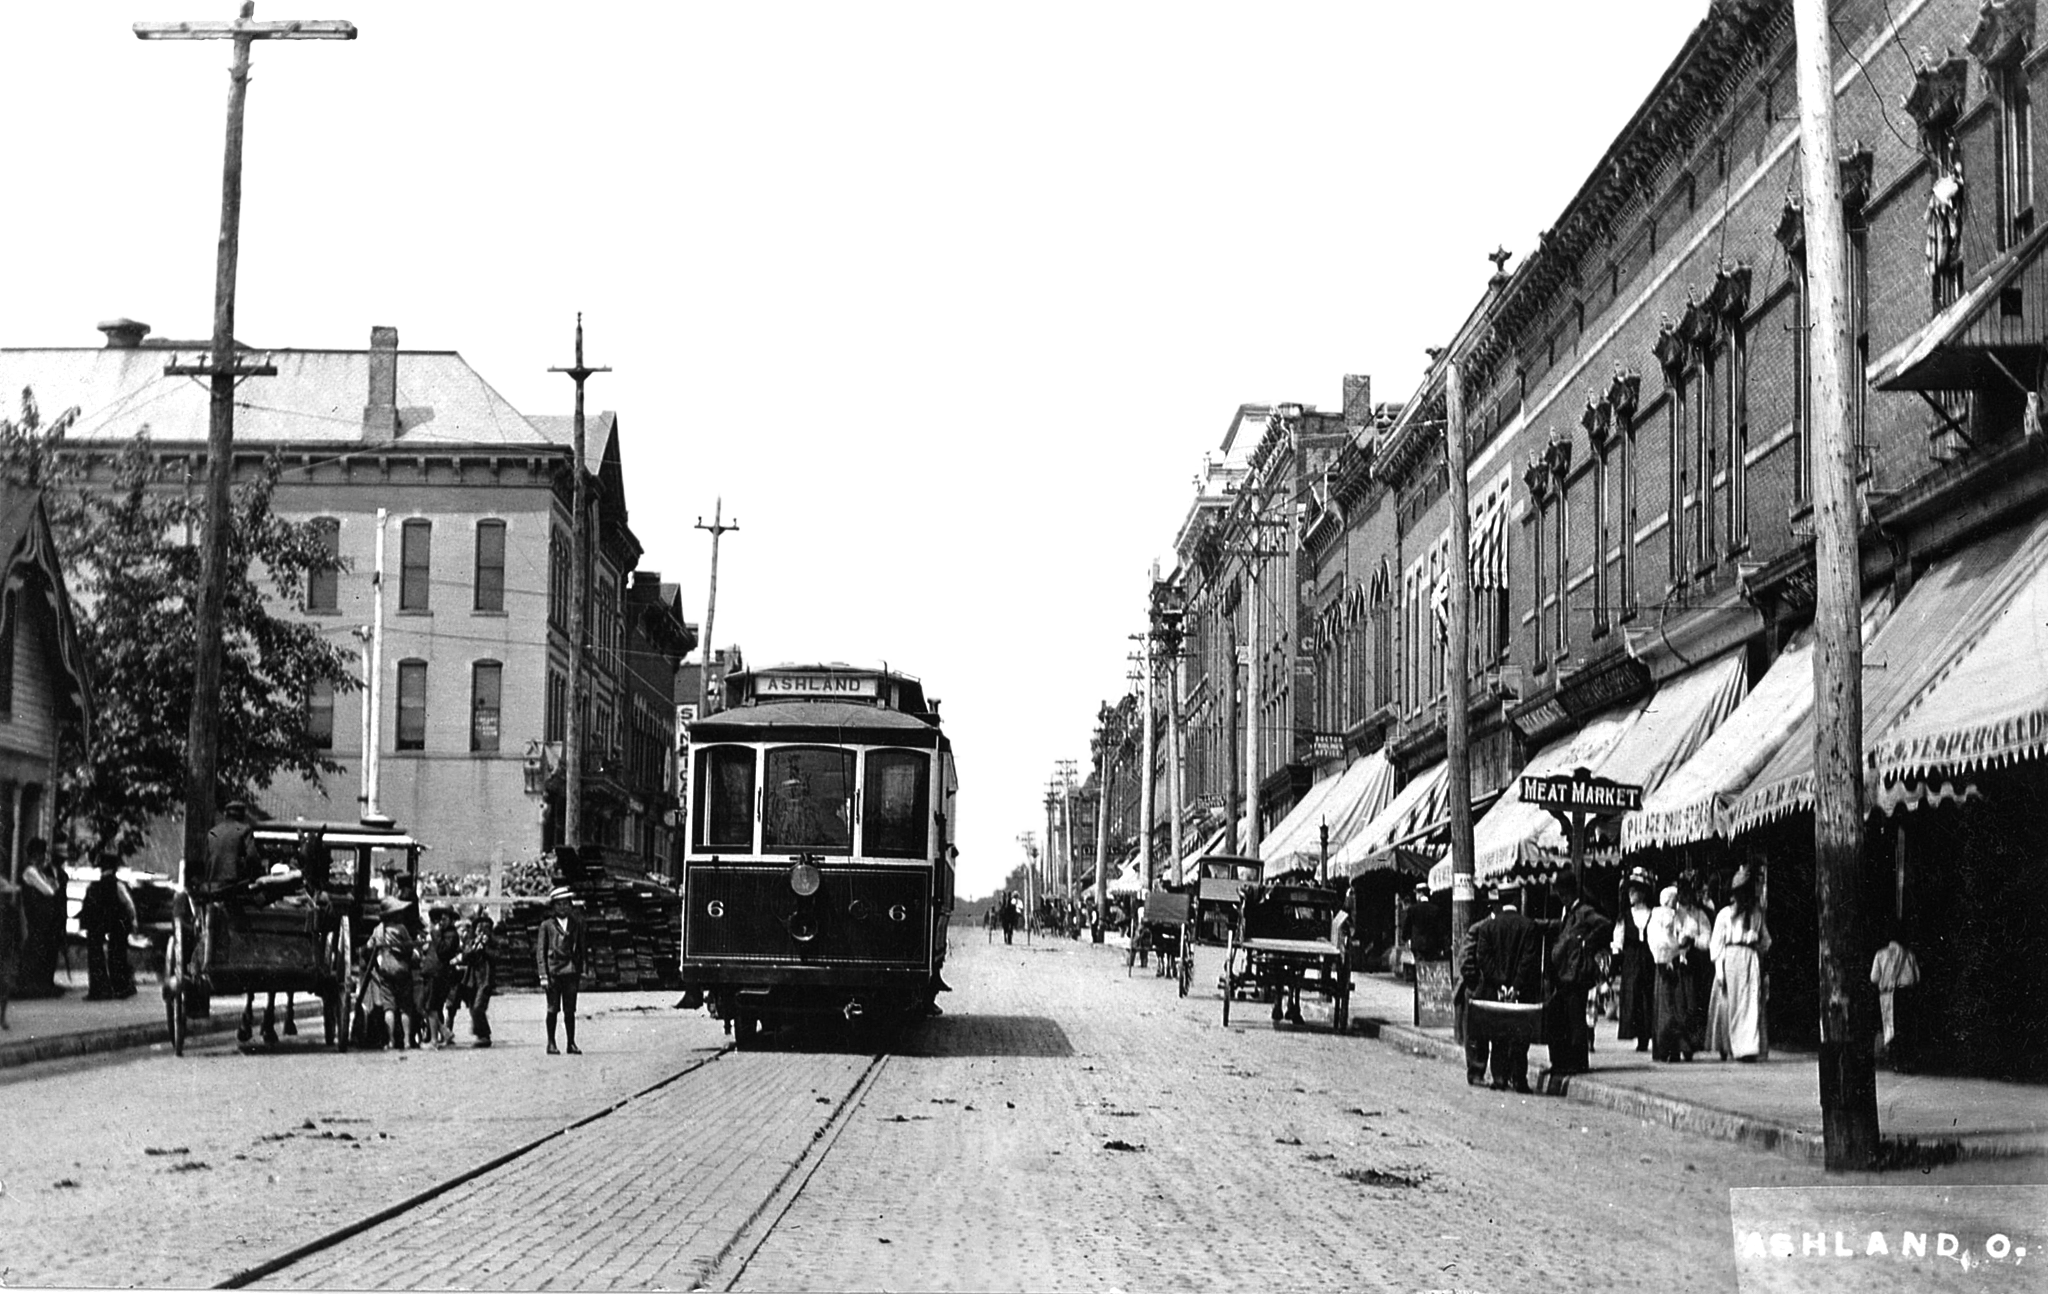 ashland main street early 1900s